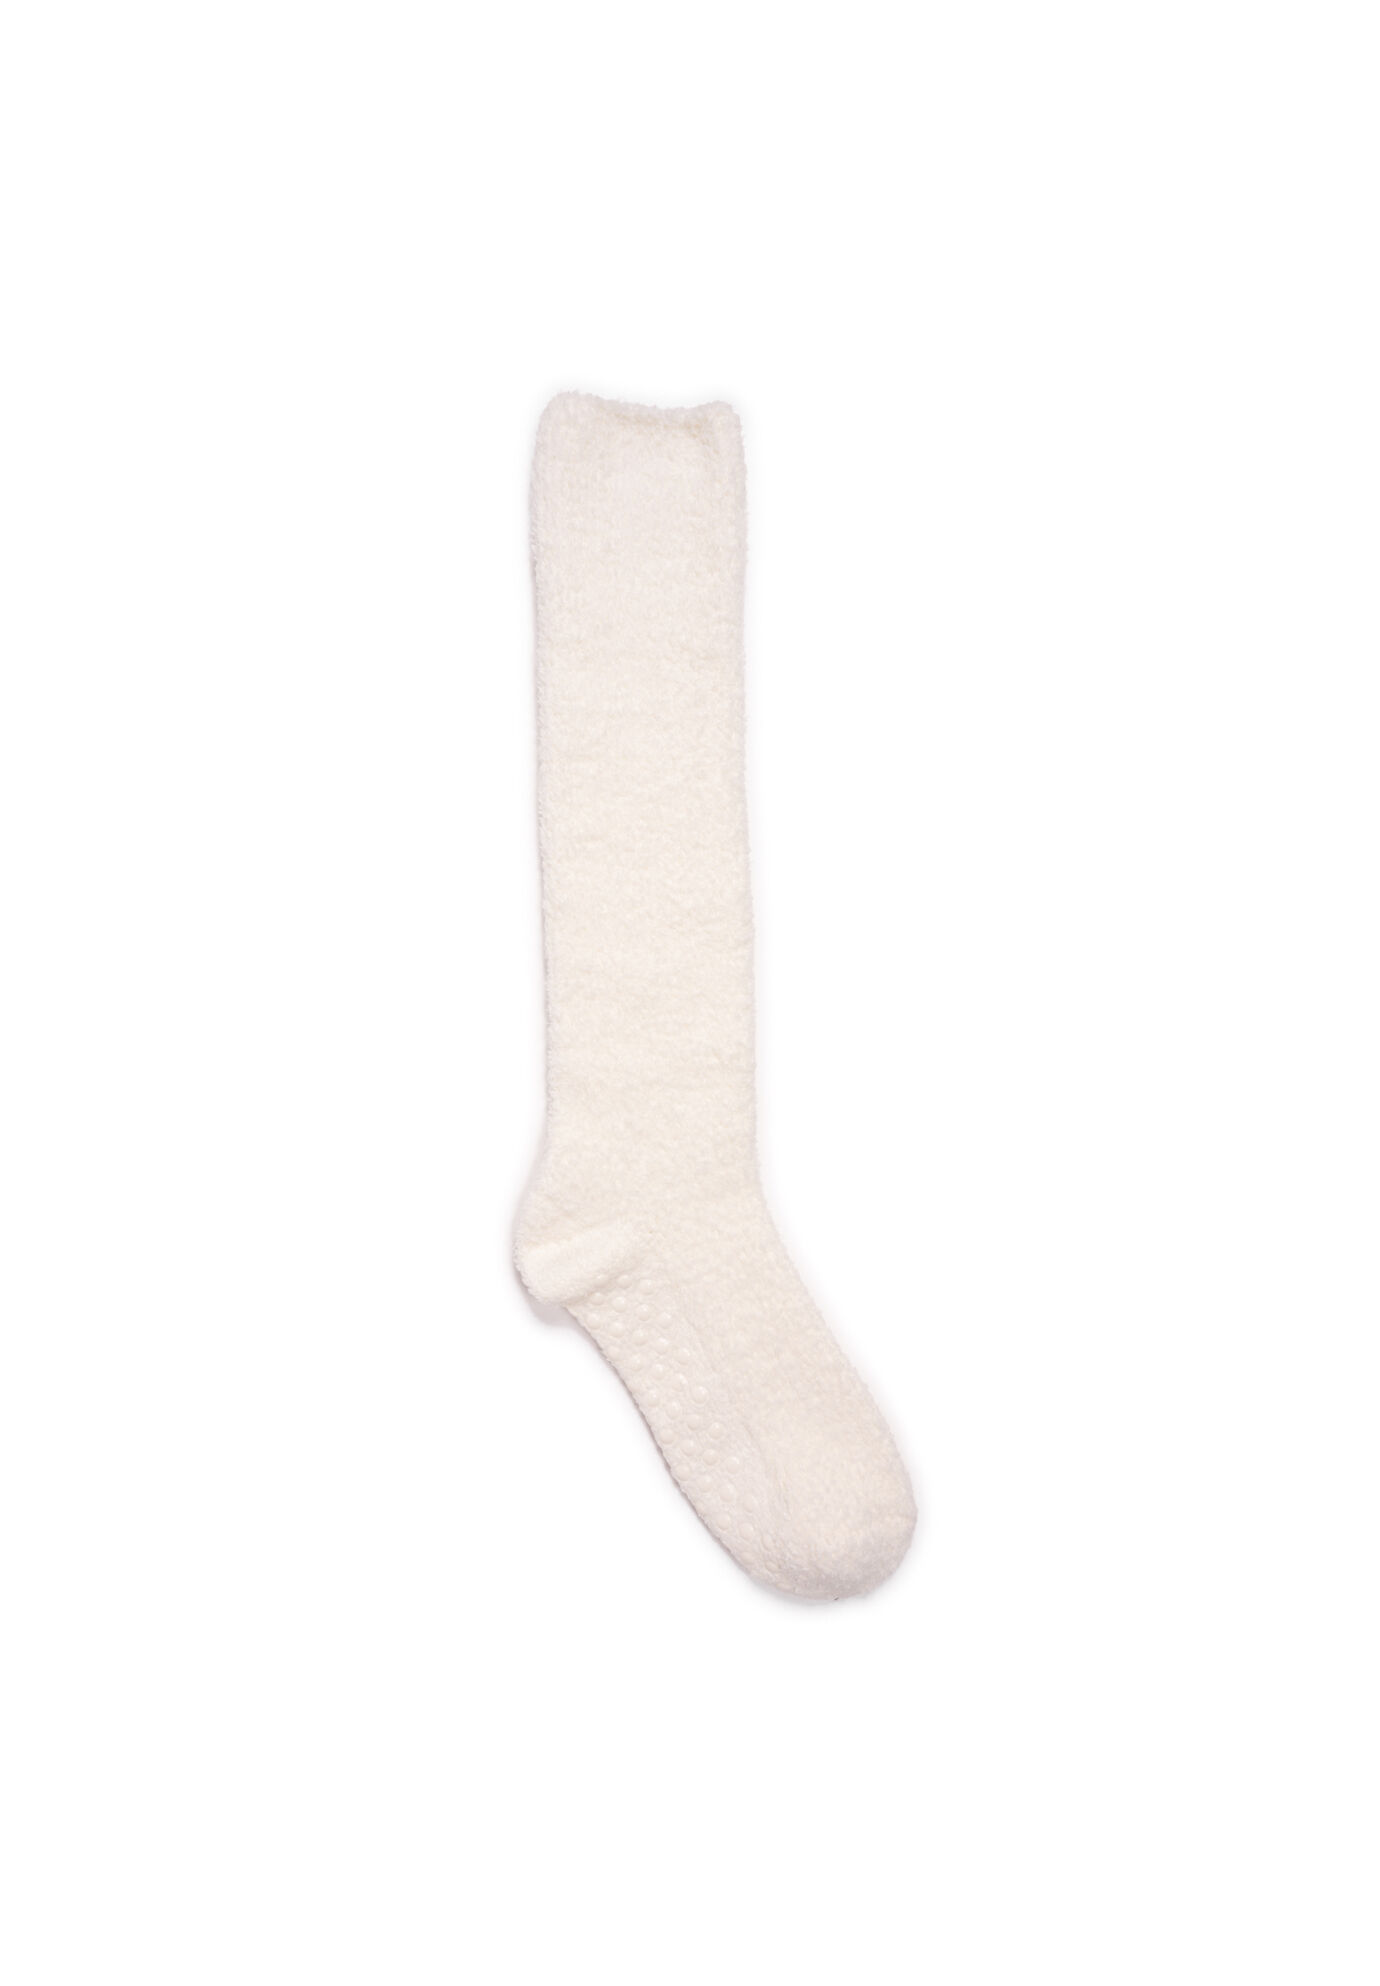 Beyond Soft Chenille Slipper Socks - Golden Gait Mercantile